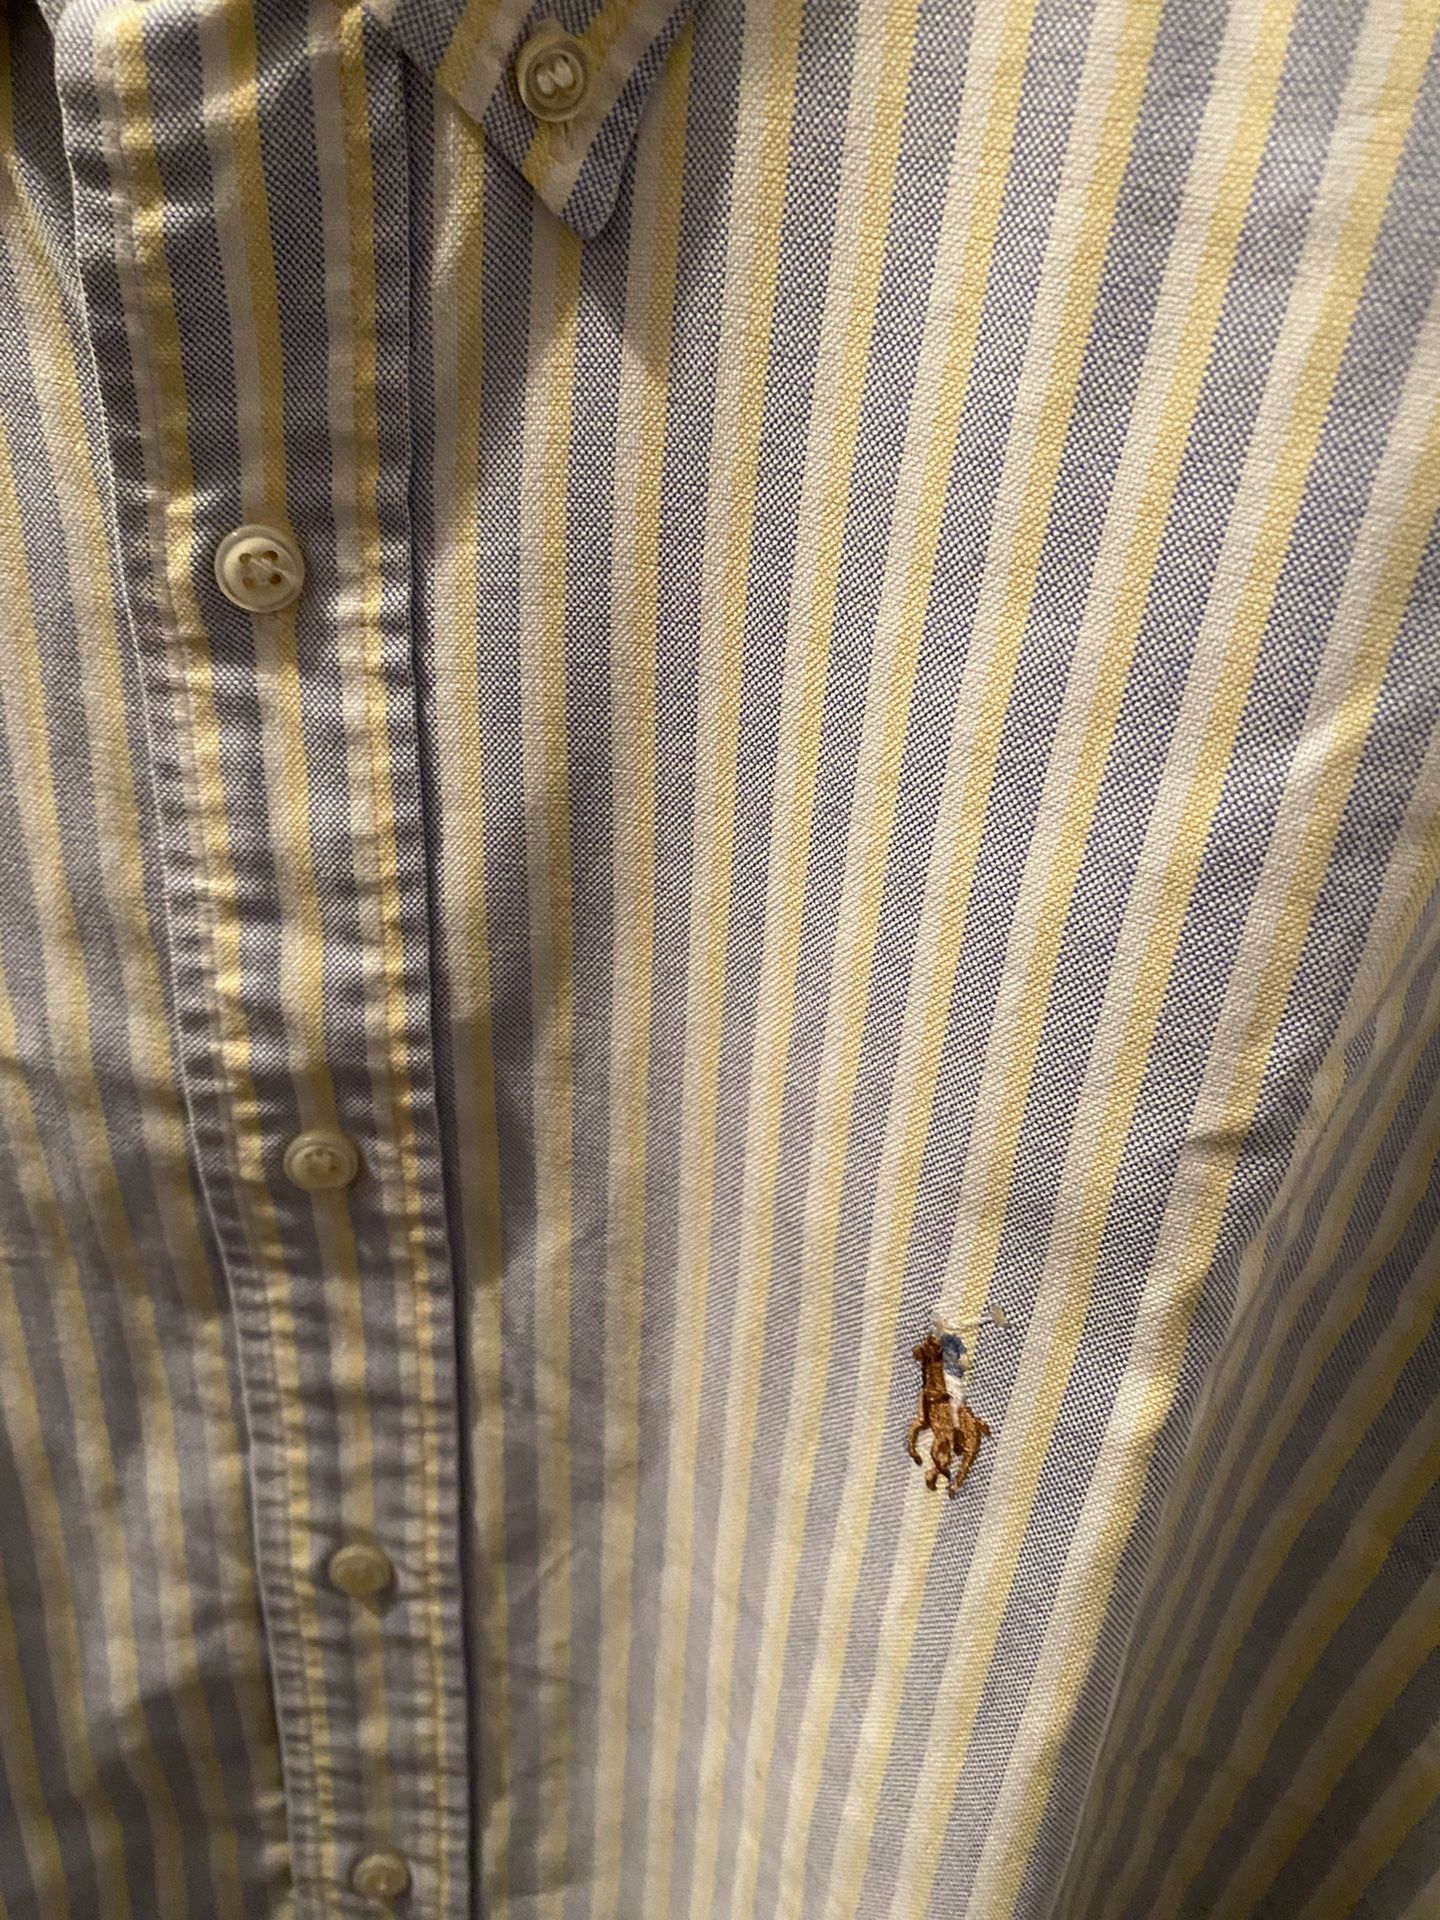 Ralph Lauren Polo Men’s Button Down Dress Shirts (3EA) Sz Large 